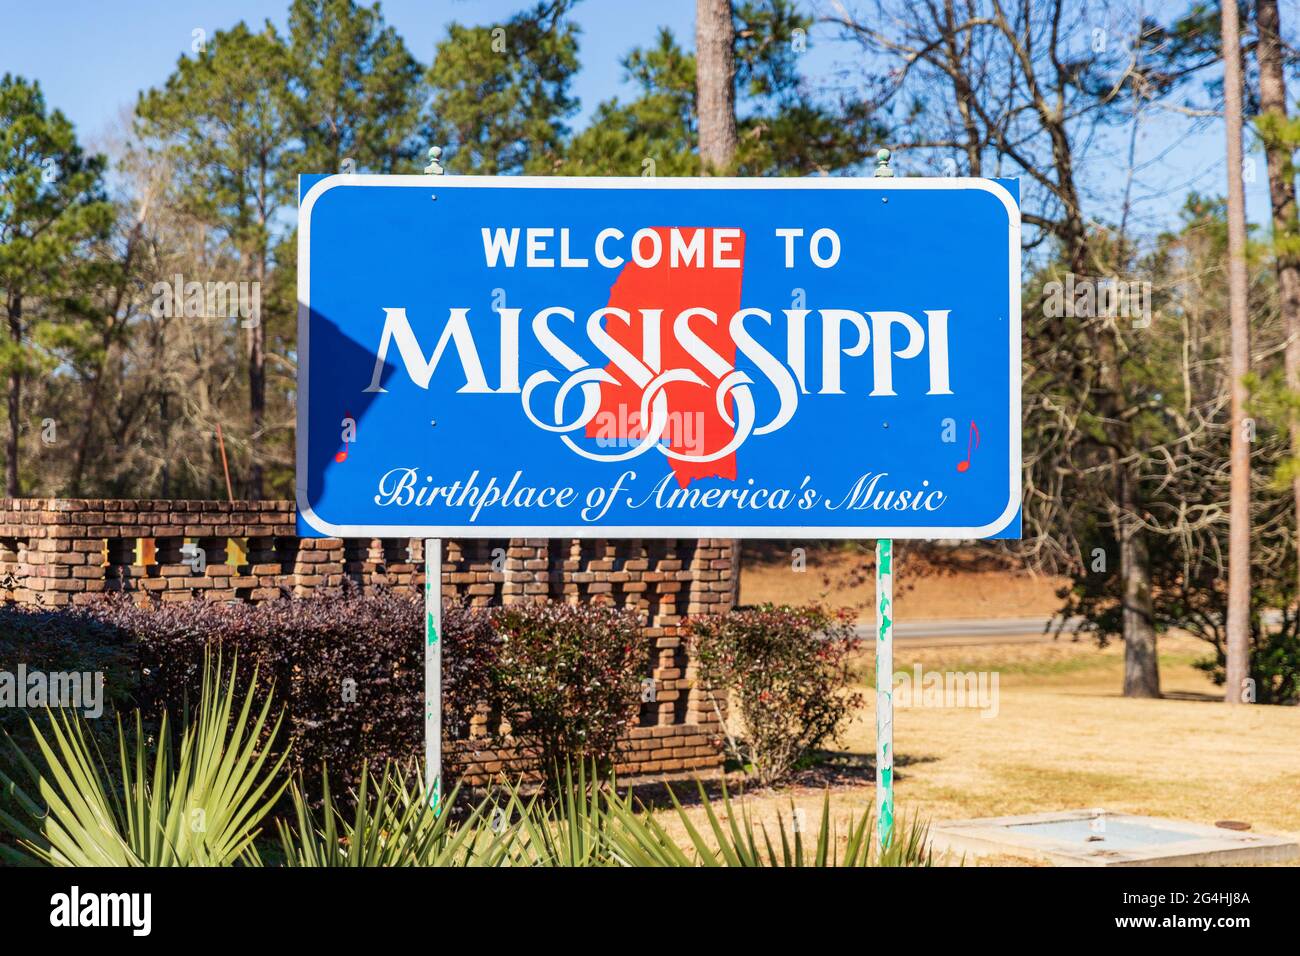 Magnolia, MS - 14 janvier 2021: Bienvenue au Mississippi Sign, lieu de naissance de la musique de l'Amérique Banque D'Images